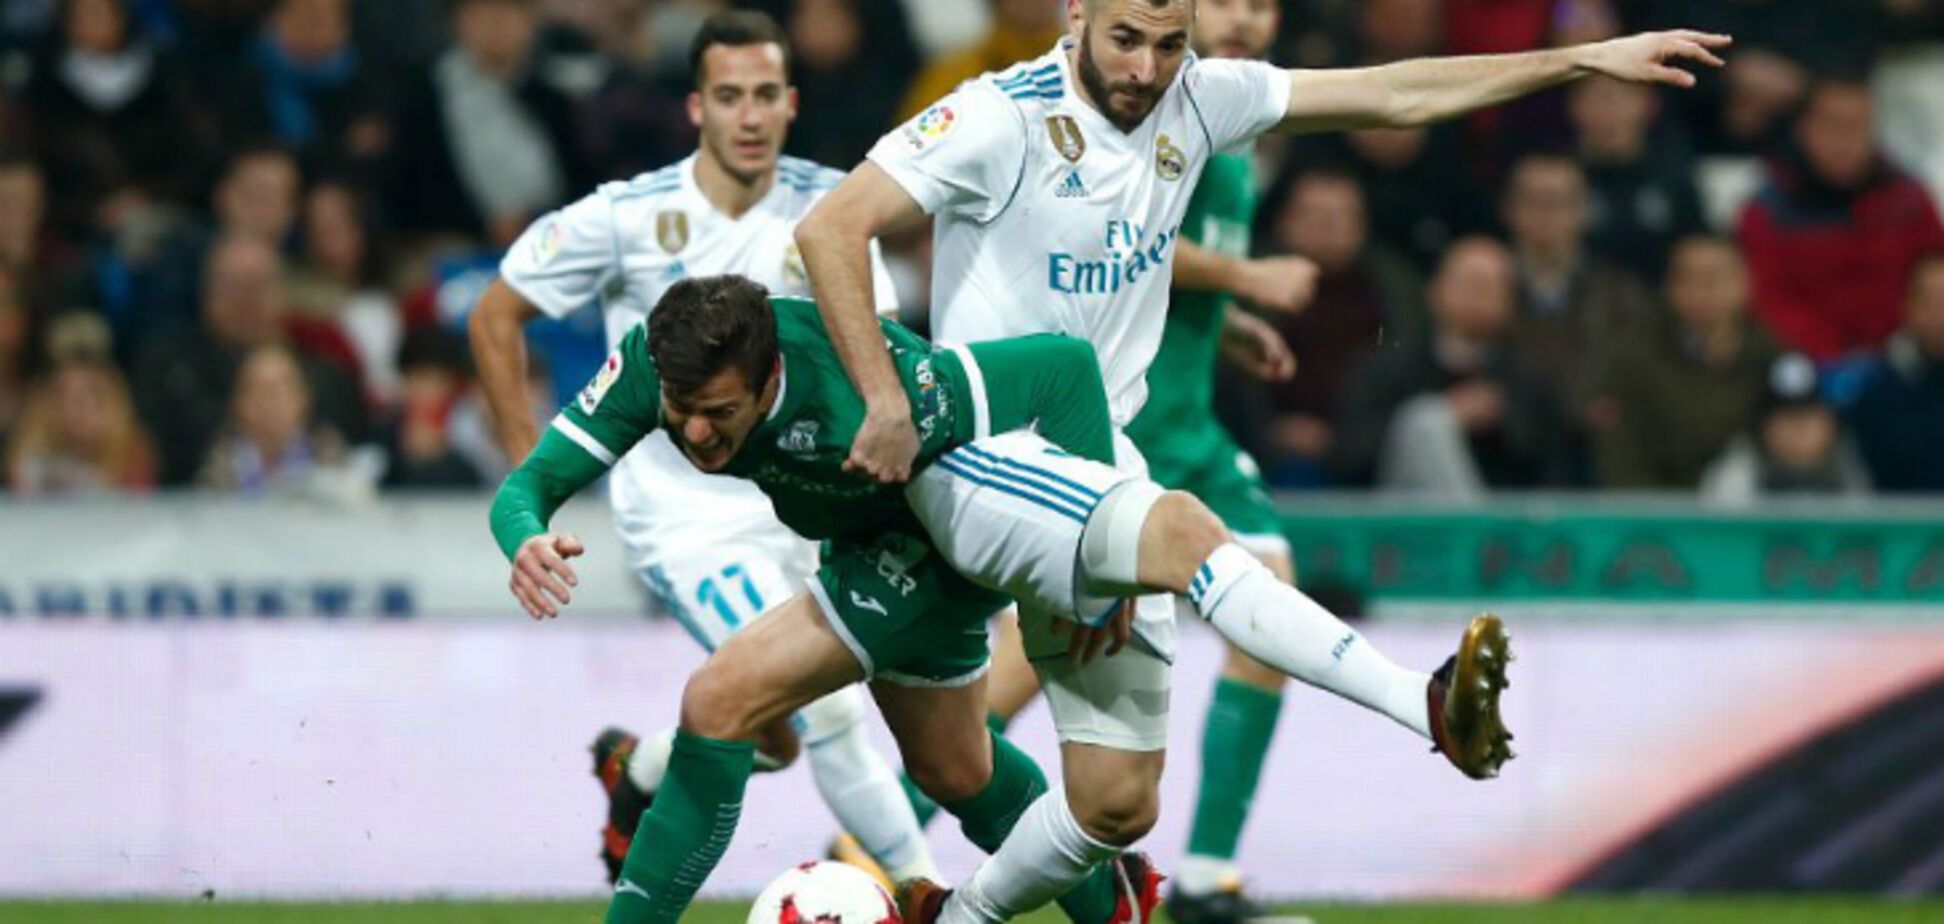 'Реал' со страшным позором вылетел из Кубка Испании